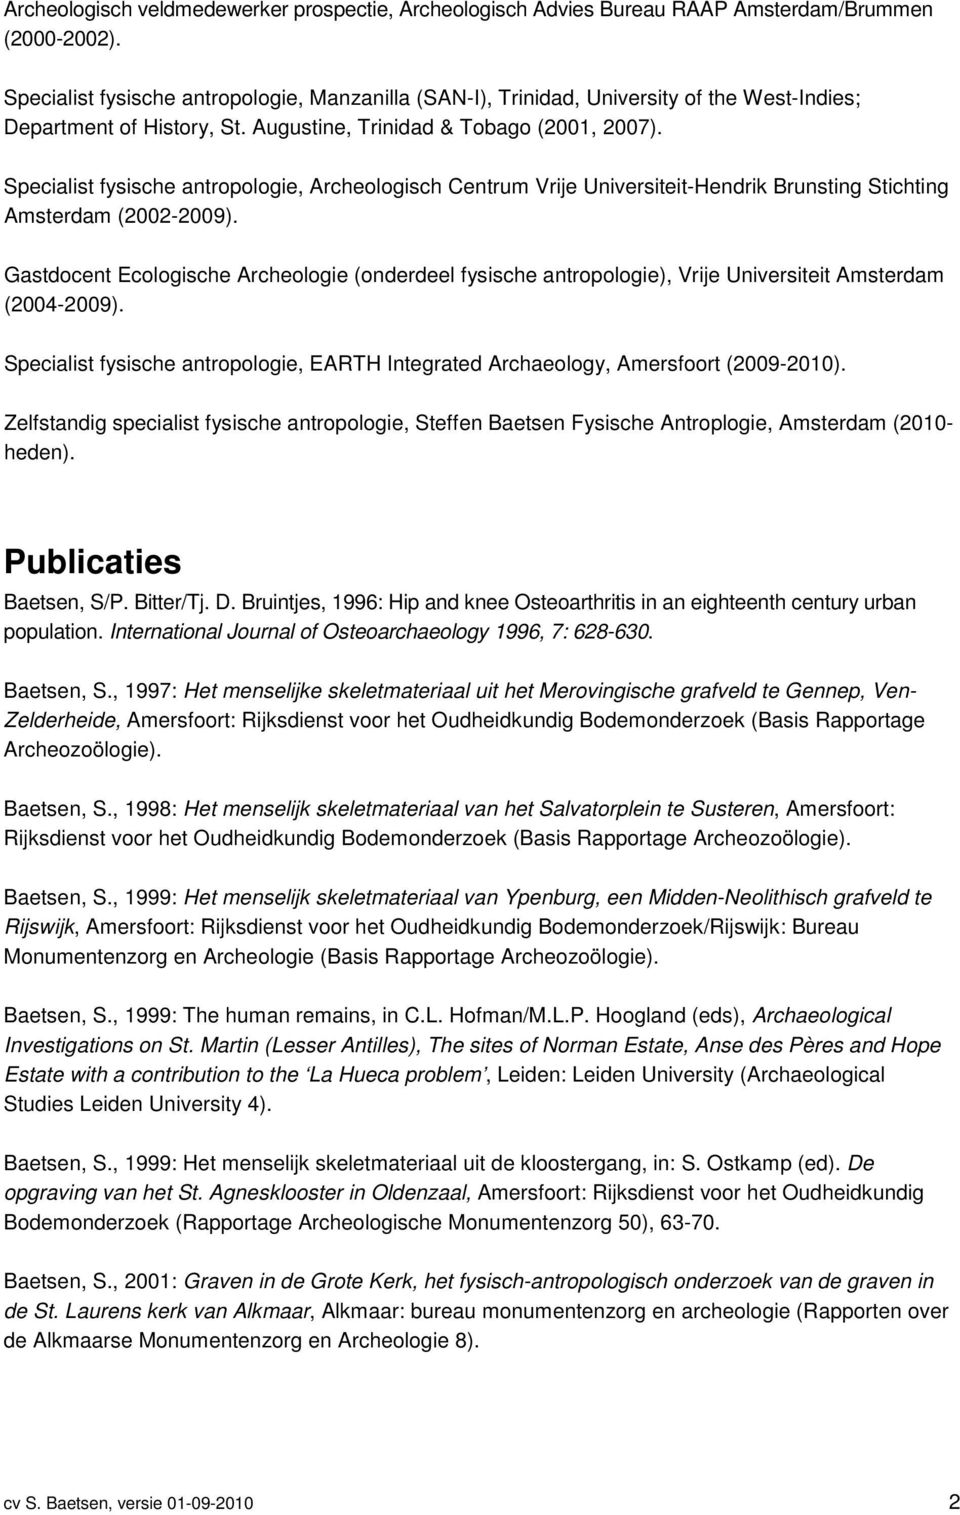 Specialist fysische antropologie, Archeologisch Centrum Vrije Universiteit-Hendrik Brunsting Stichting Amsterdam (2002-2009).